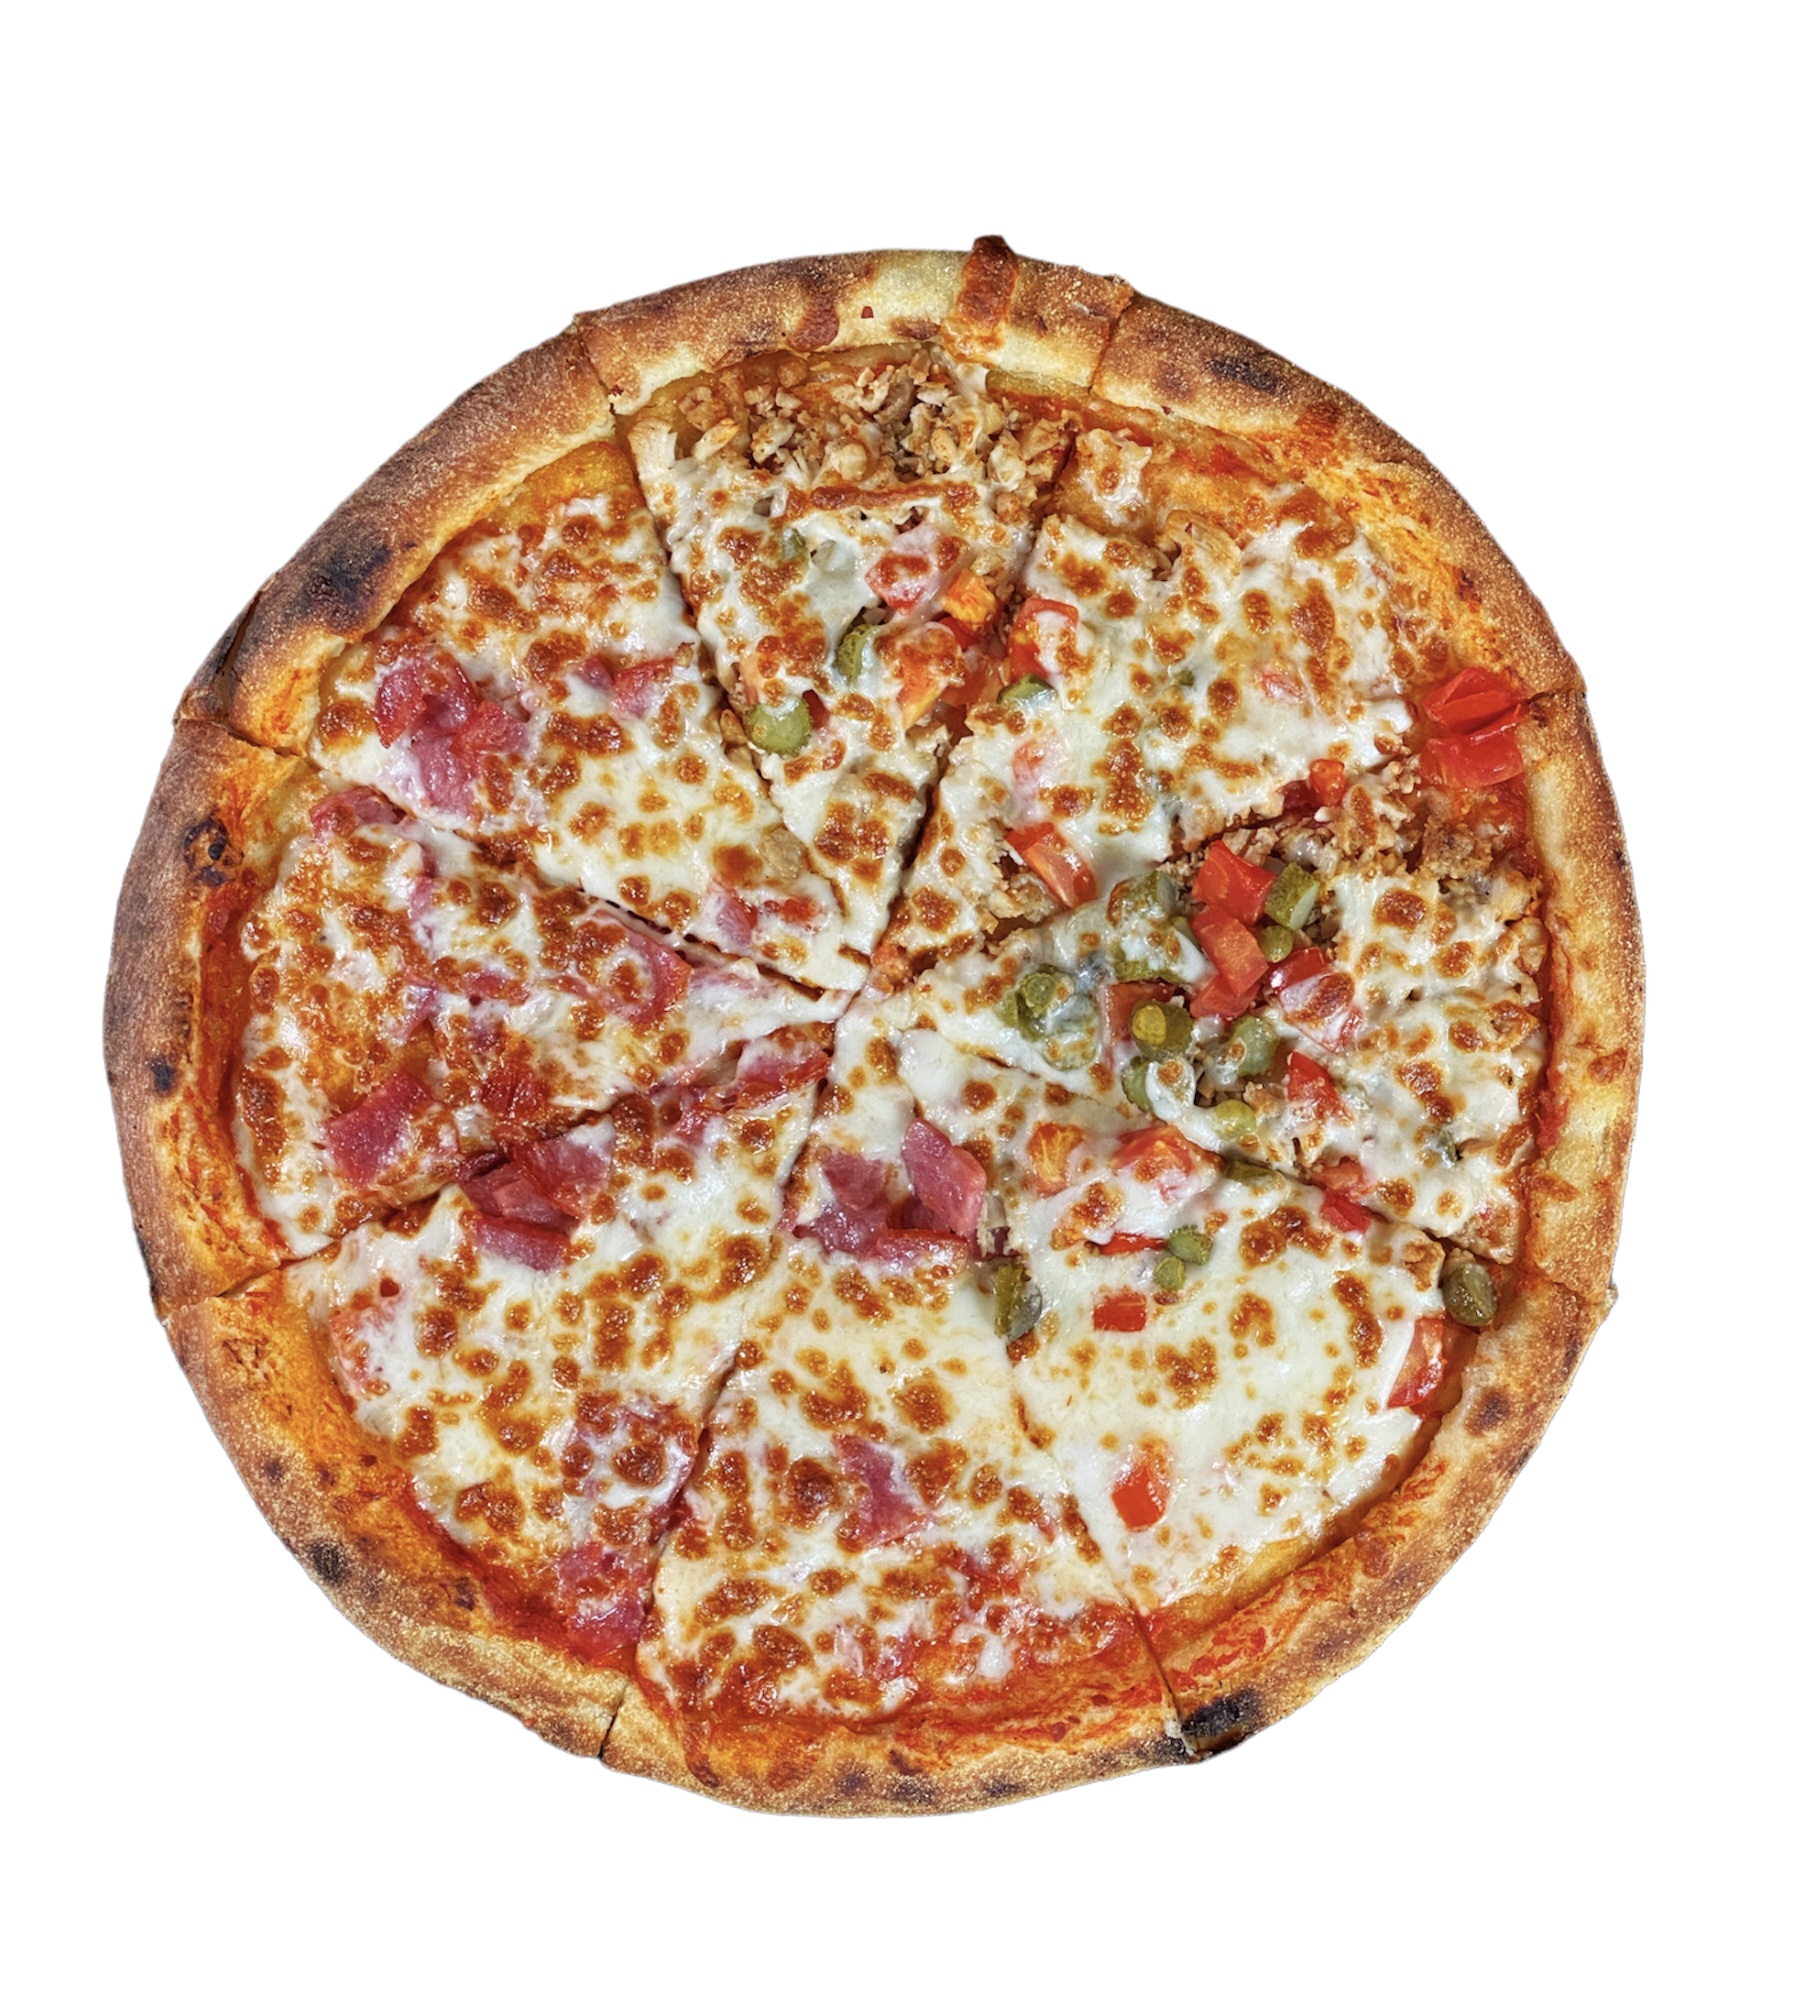 Пицца пикантная. Салями Пиканте пицца. Пиццерия Уфоник. Рецепт пикантной пиццы из пицца ник.